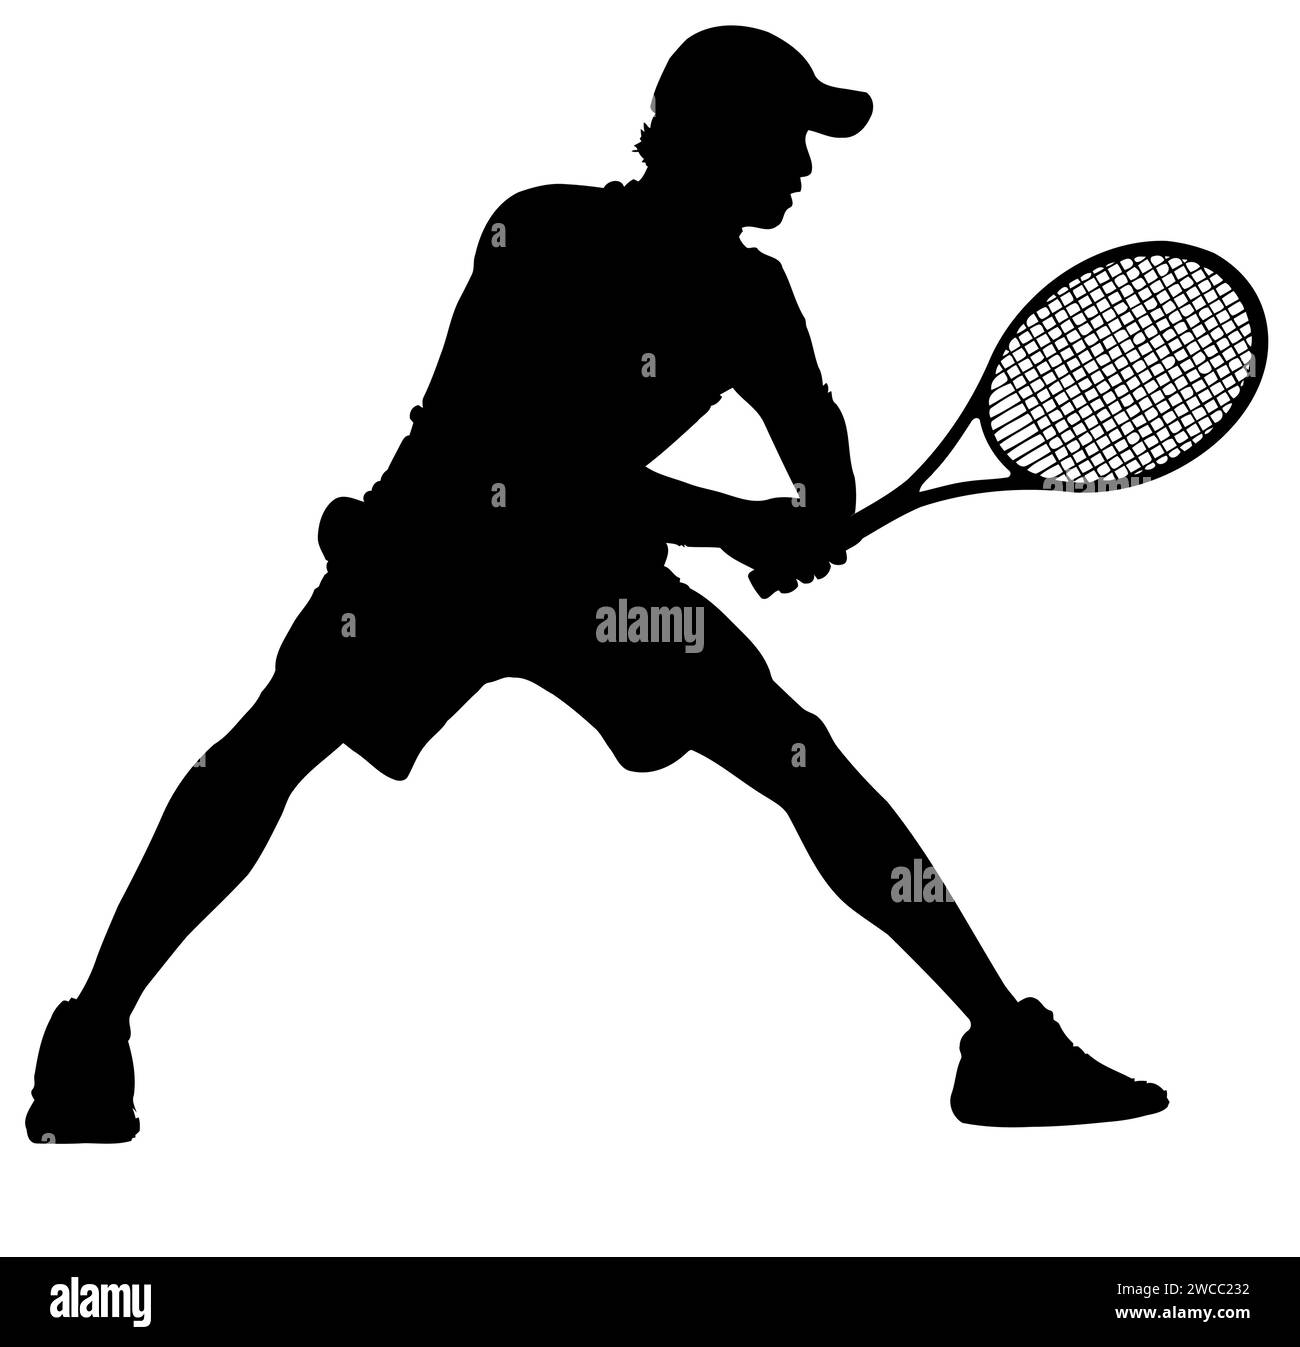 Silhouettes de joueur de tennis - position du corps homme ou garçon prêt à recevoir le service. Illustration de Vecteur